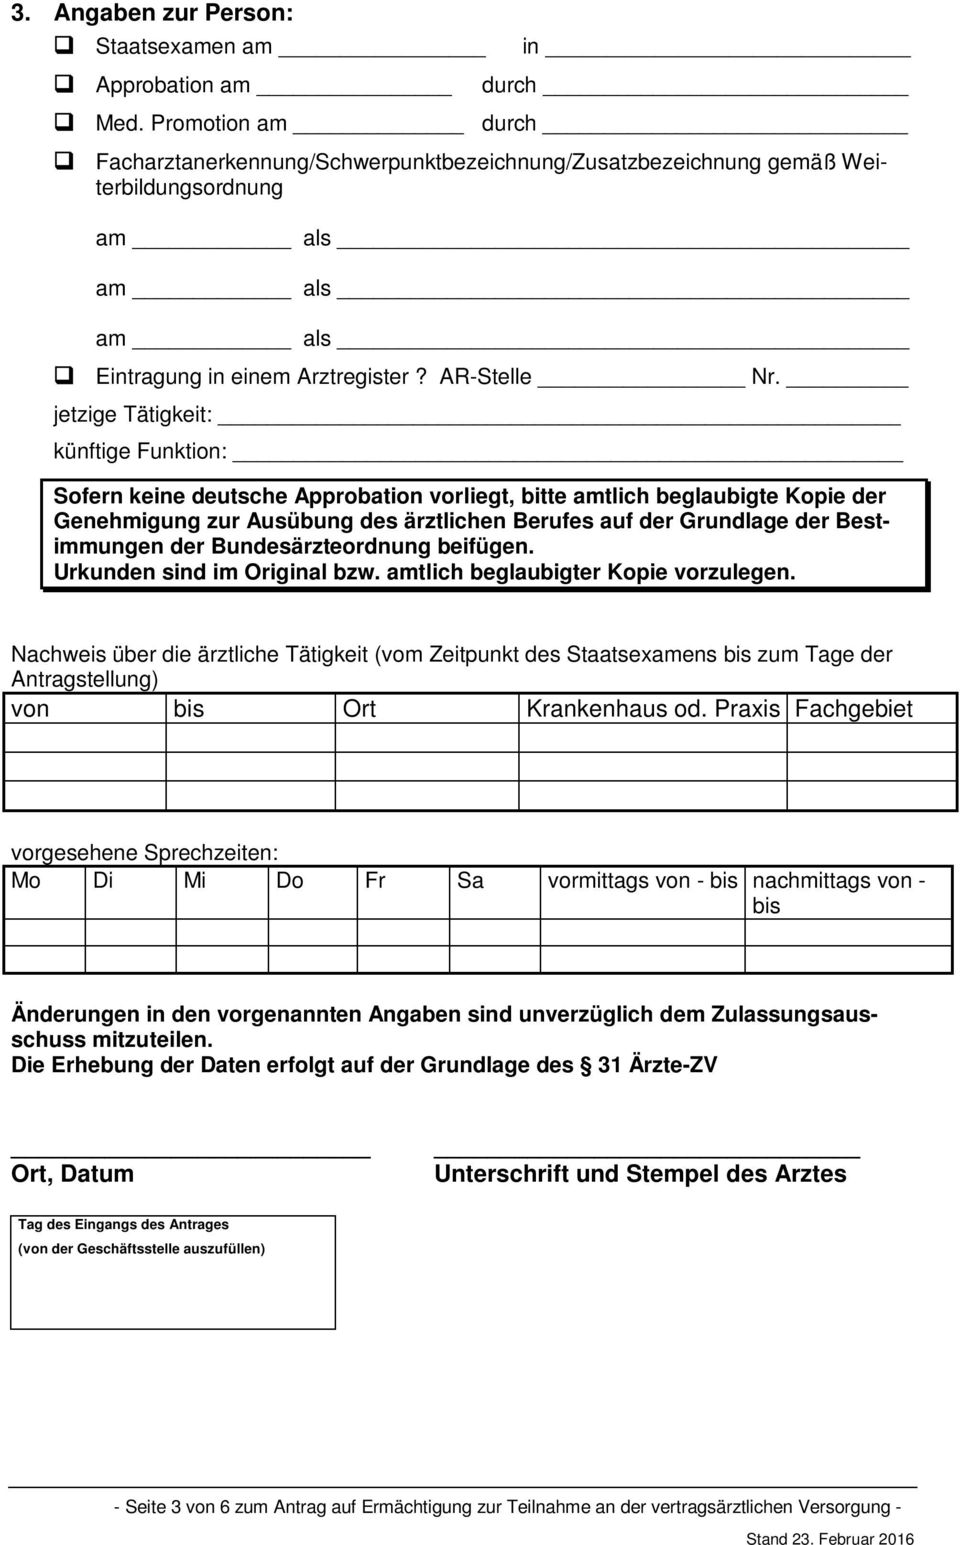 jetzige Tätigkeit: künftige Funktion: Sofern keine deutsche Approbation vorliegt, bitte amtlich beglaubigte Kopie der Genehmigung zur Ausübung des ärztlichen Berufes auf der Grundlage der